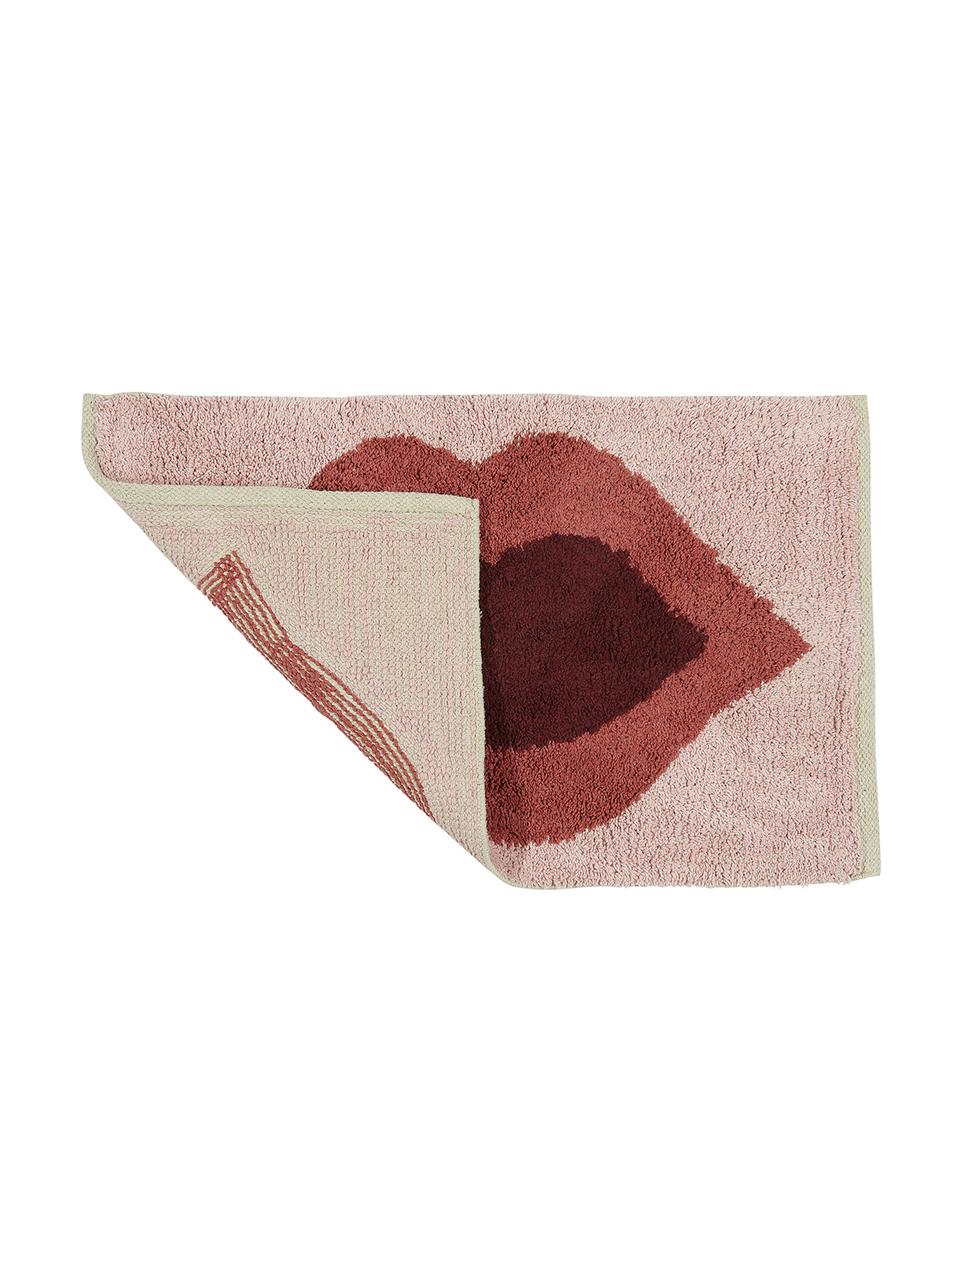 Predložka do kúpeľne s motívom Kiss, 100 %  bavlna
Bez protišmykovej úpravy, Bledoružová, červená, tmavočervená, Š 60 x D 90 cm